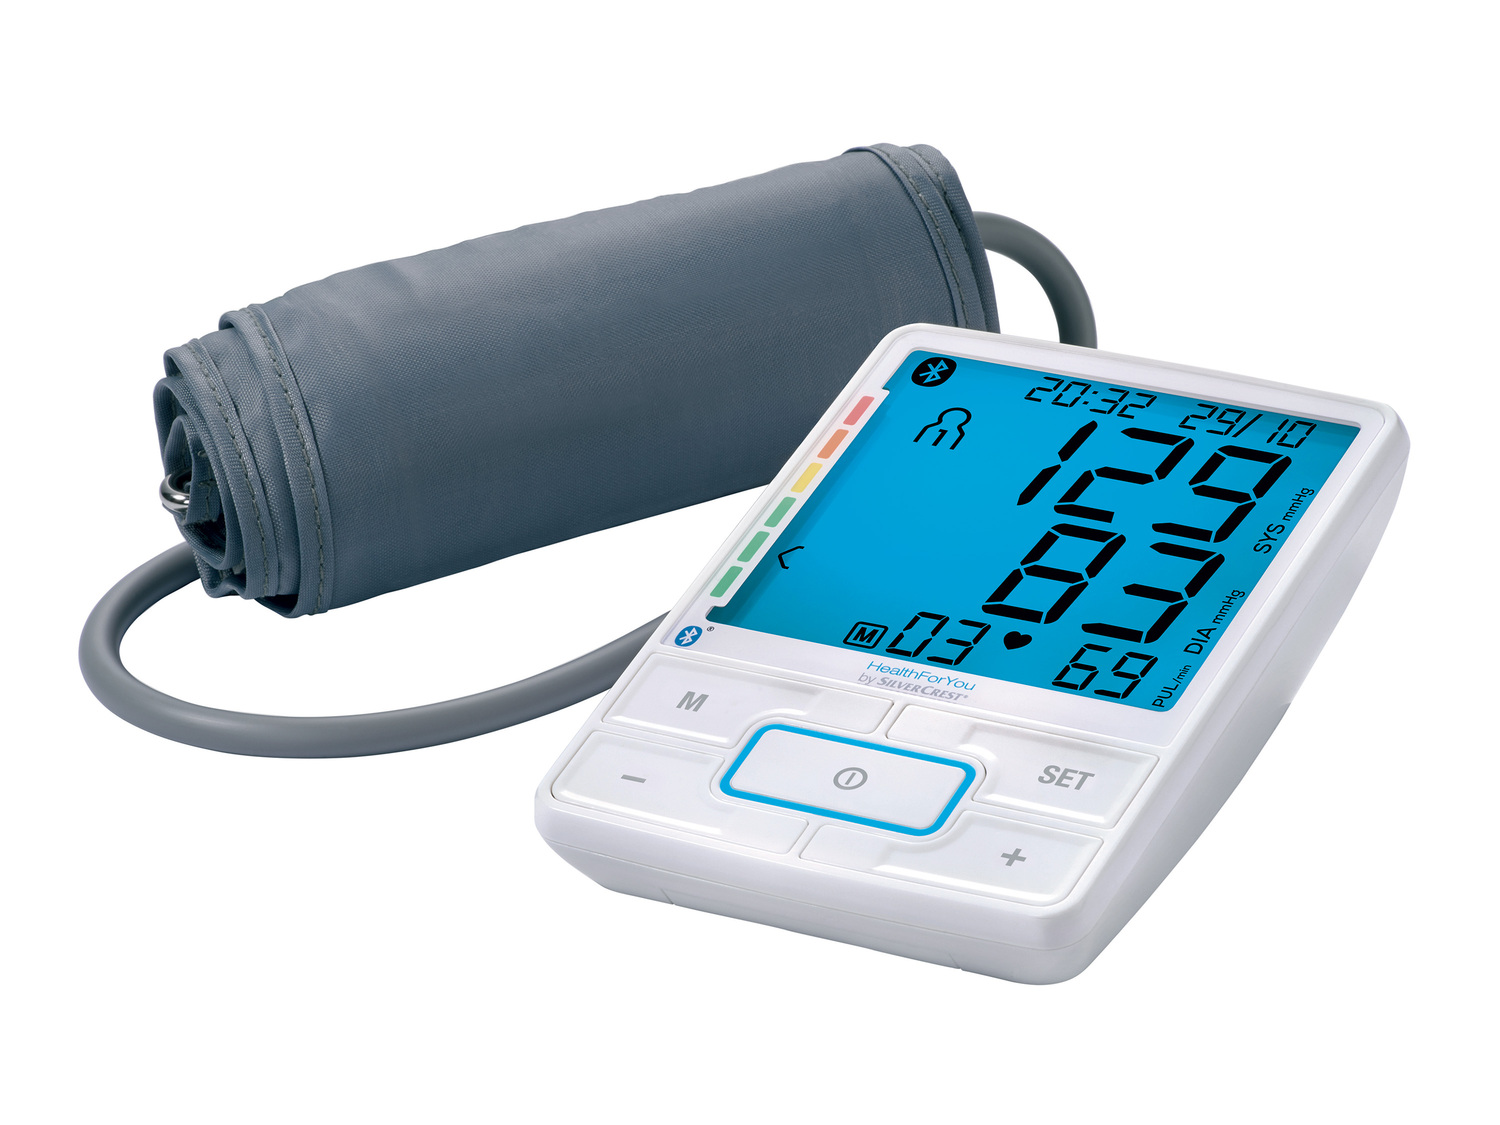 Tensiomètre de bras , le prix 26.99 € 
- Carnet de pression artérielle et sac ...